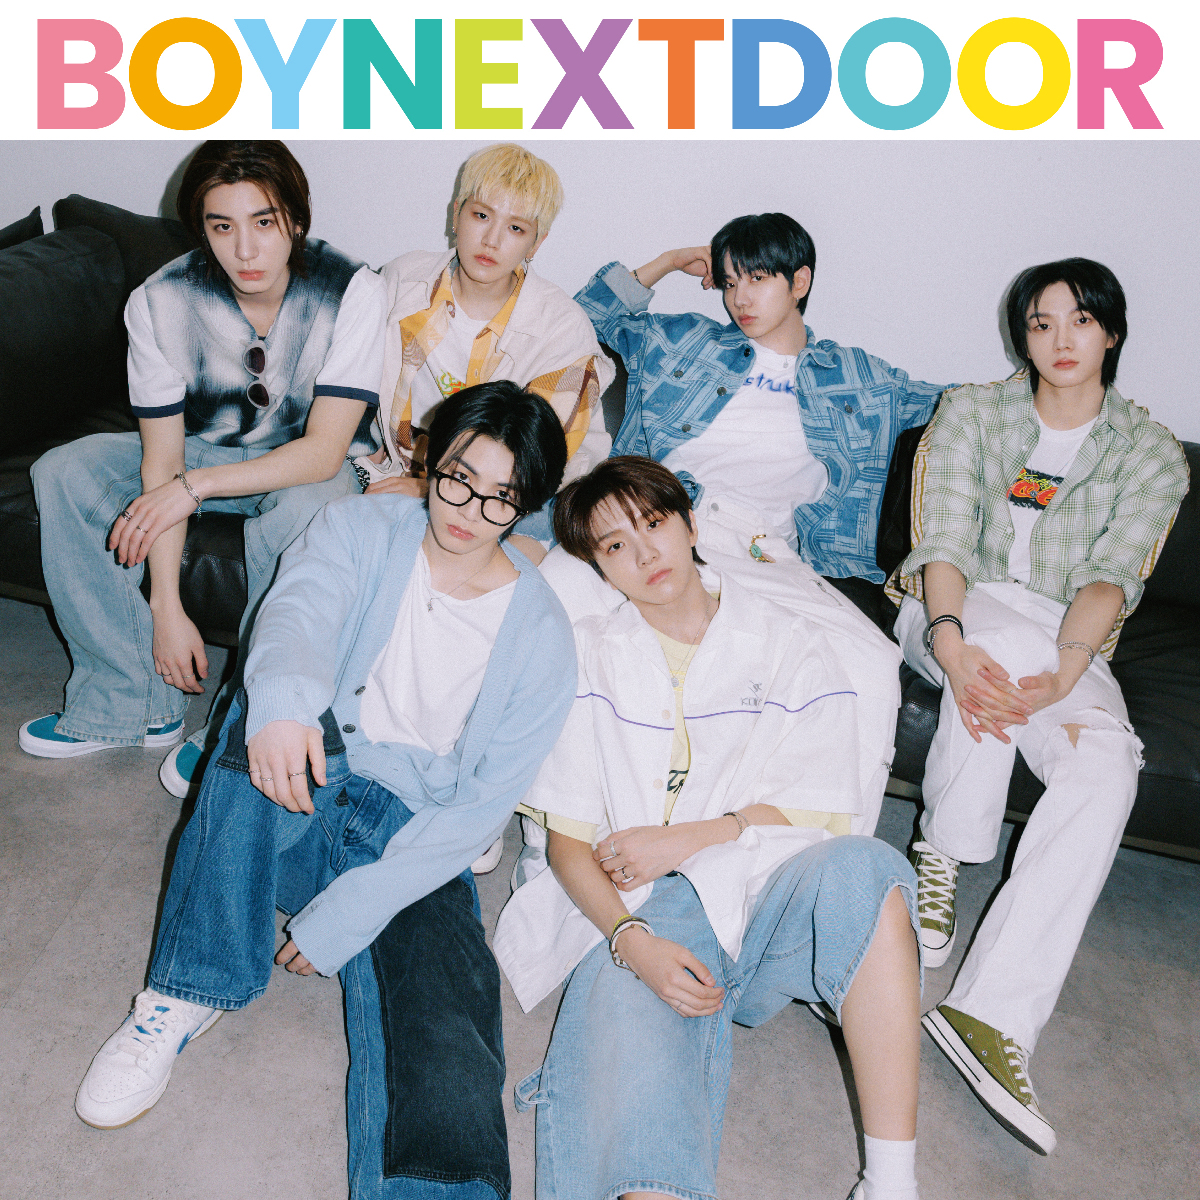 【BOYNEXTDOOR】メンバーが日本でやりたいことは？ そして2nd EP『HOW?』の魅力とは？